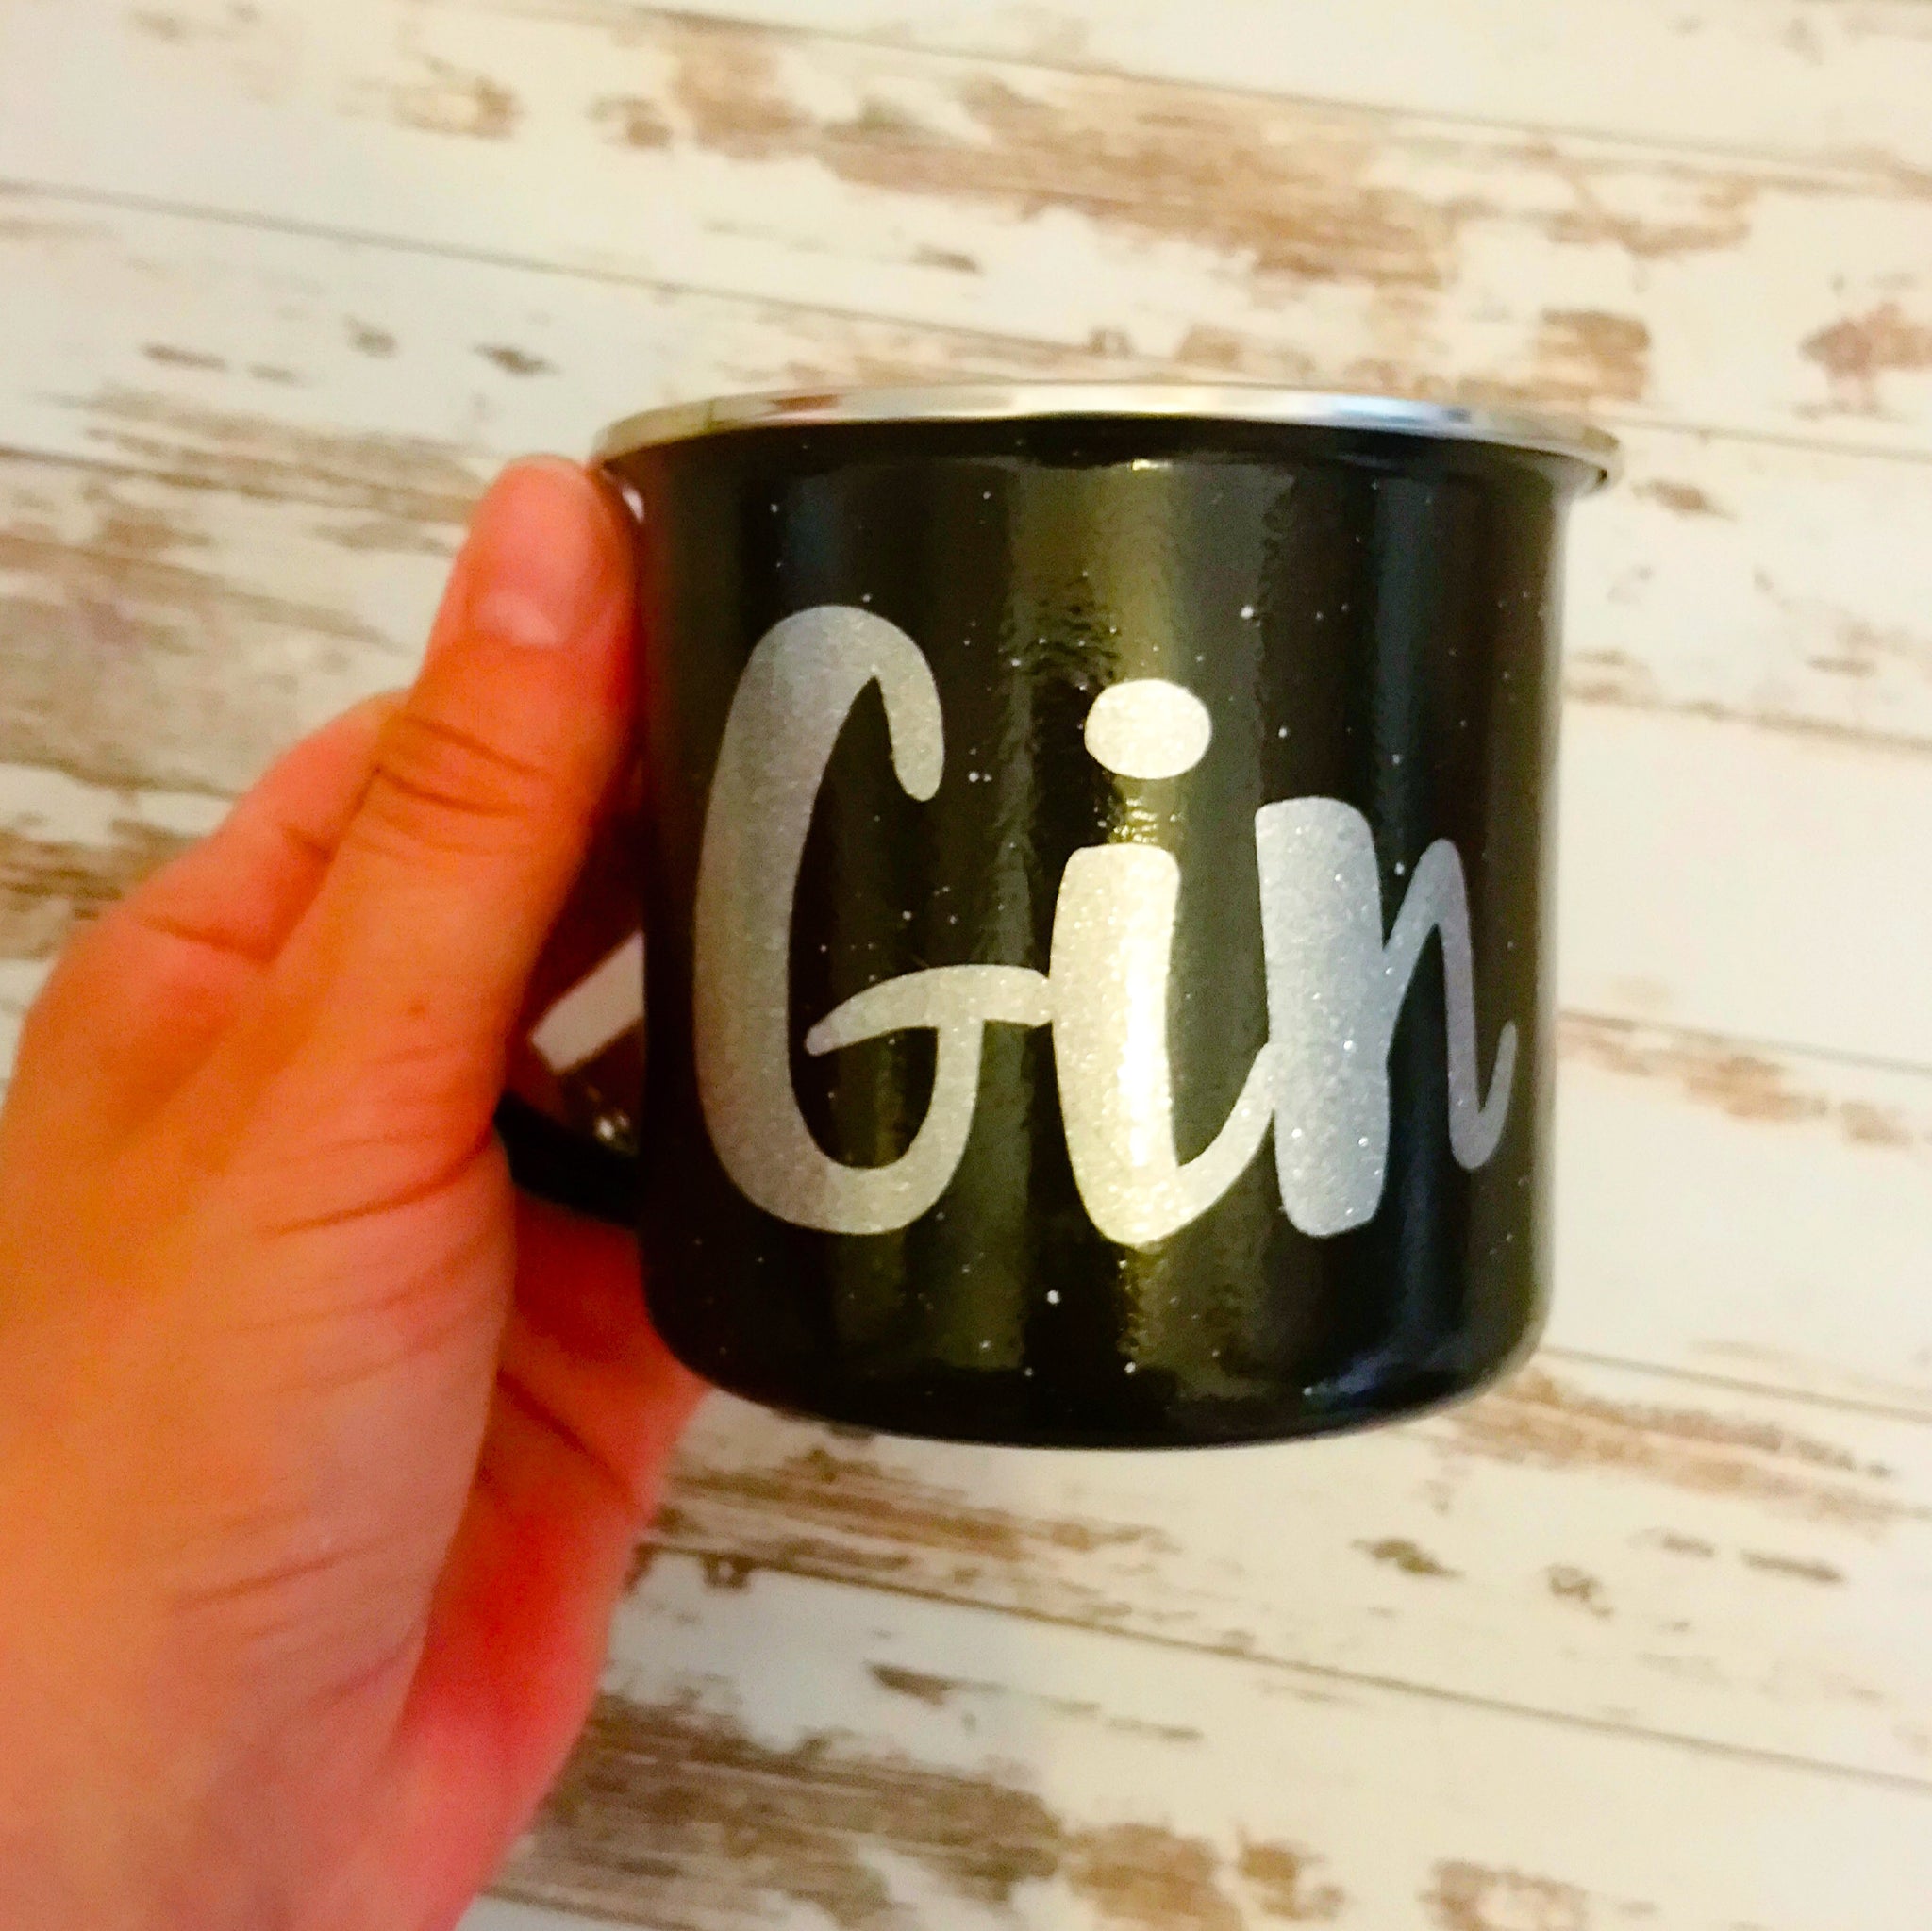 Enamel "Gin" camping mug